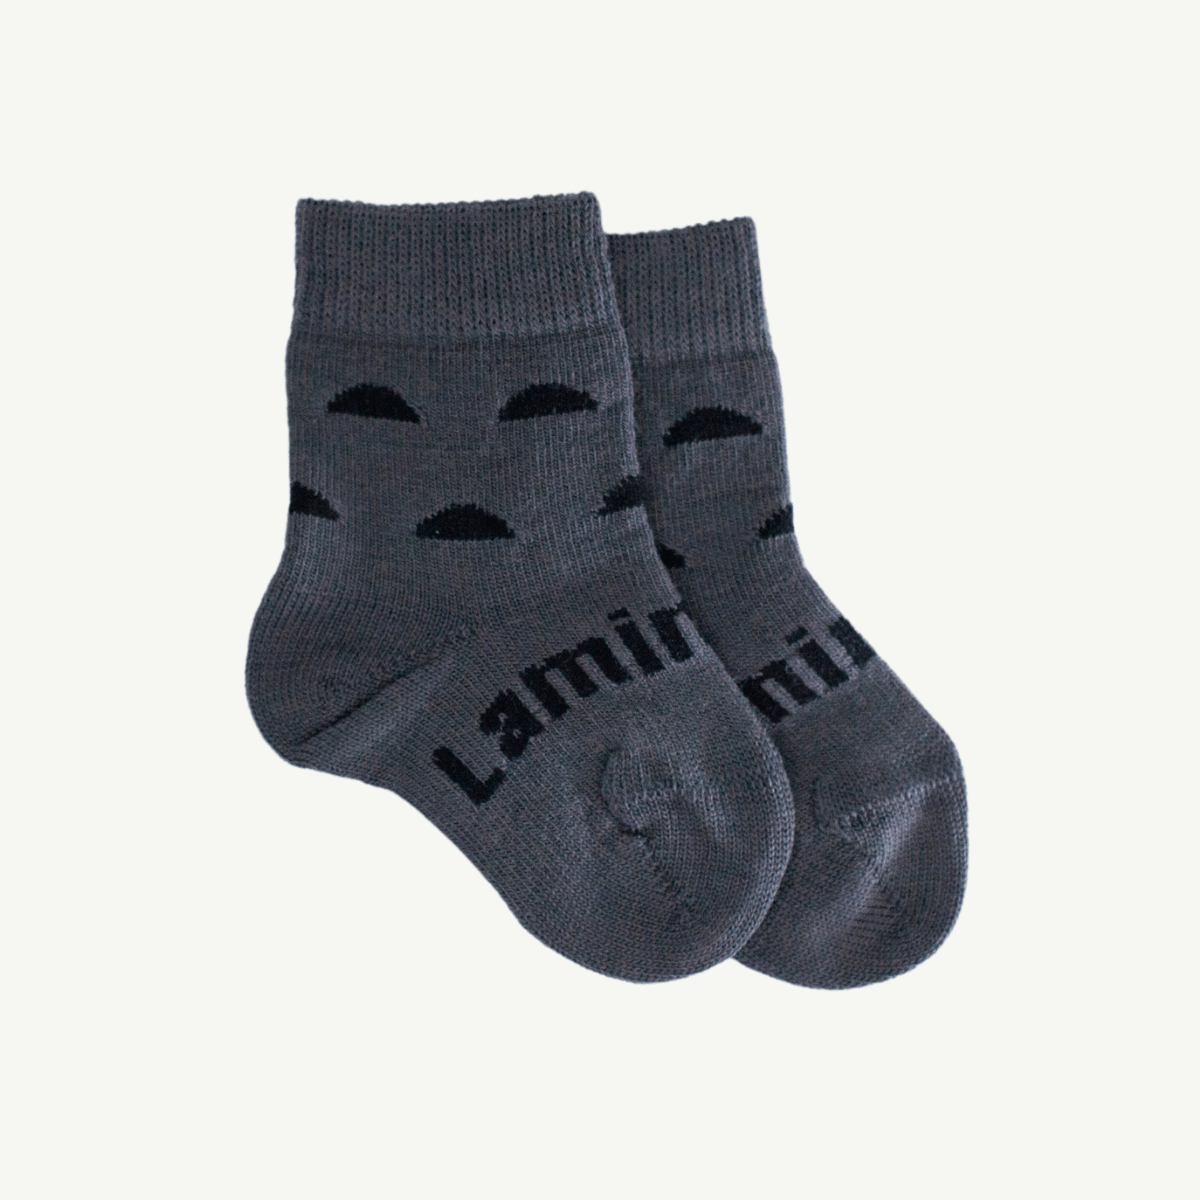 merino wool baby socks australia